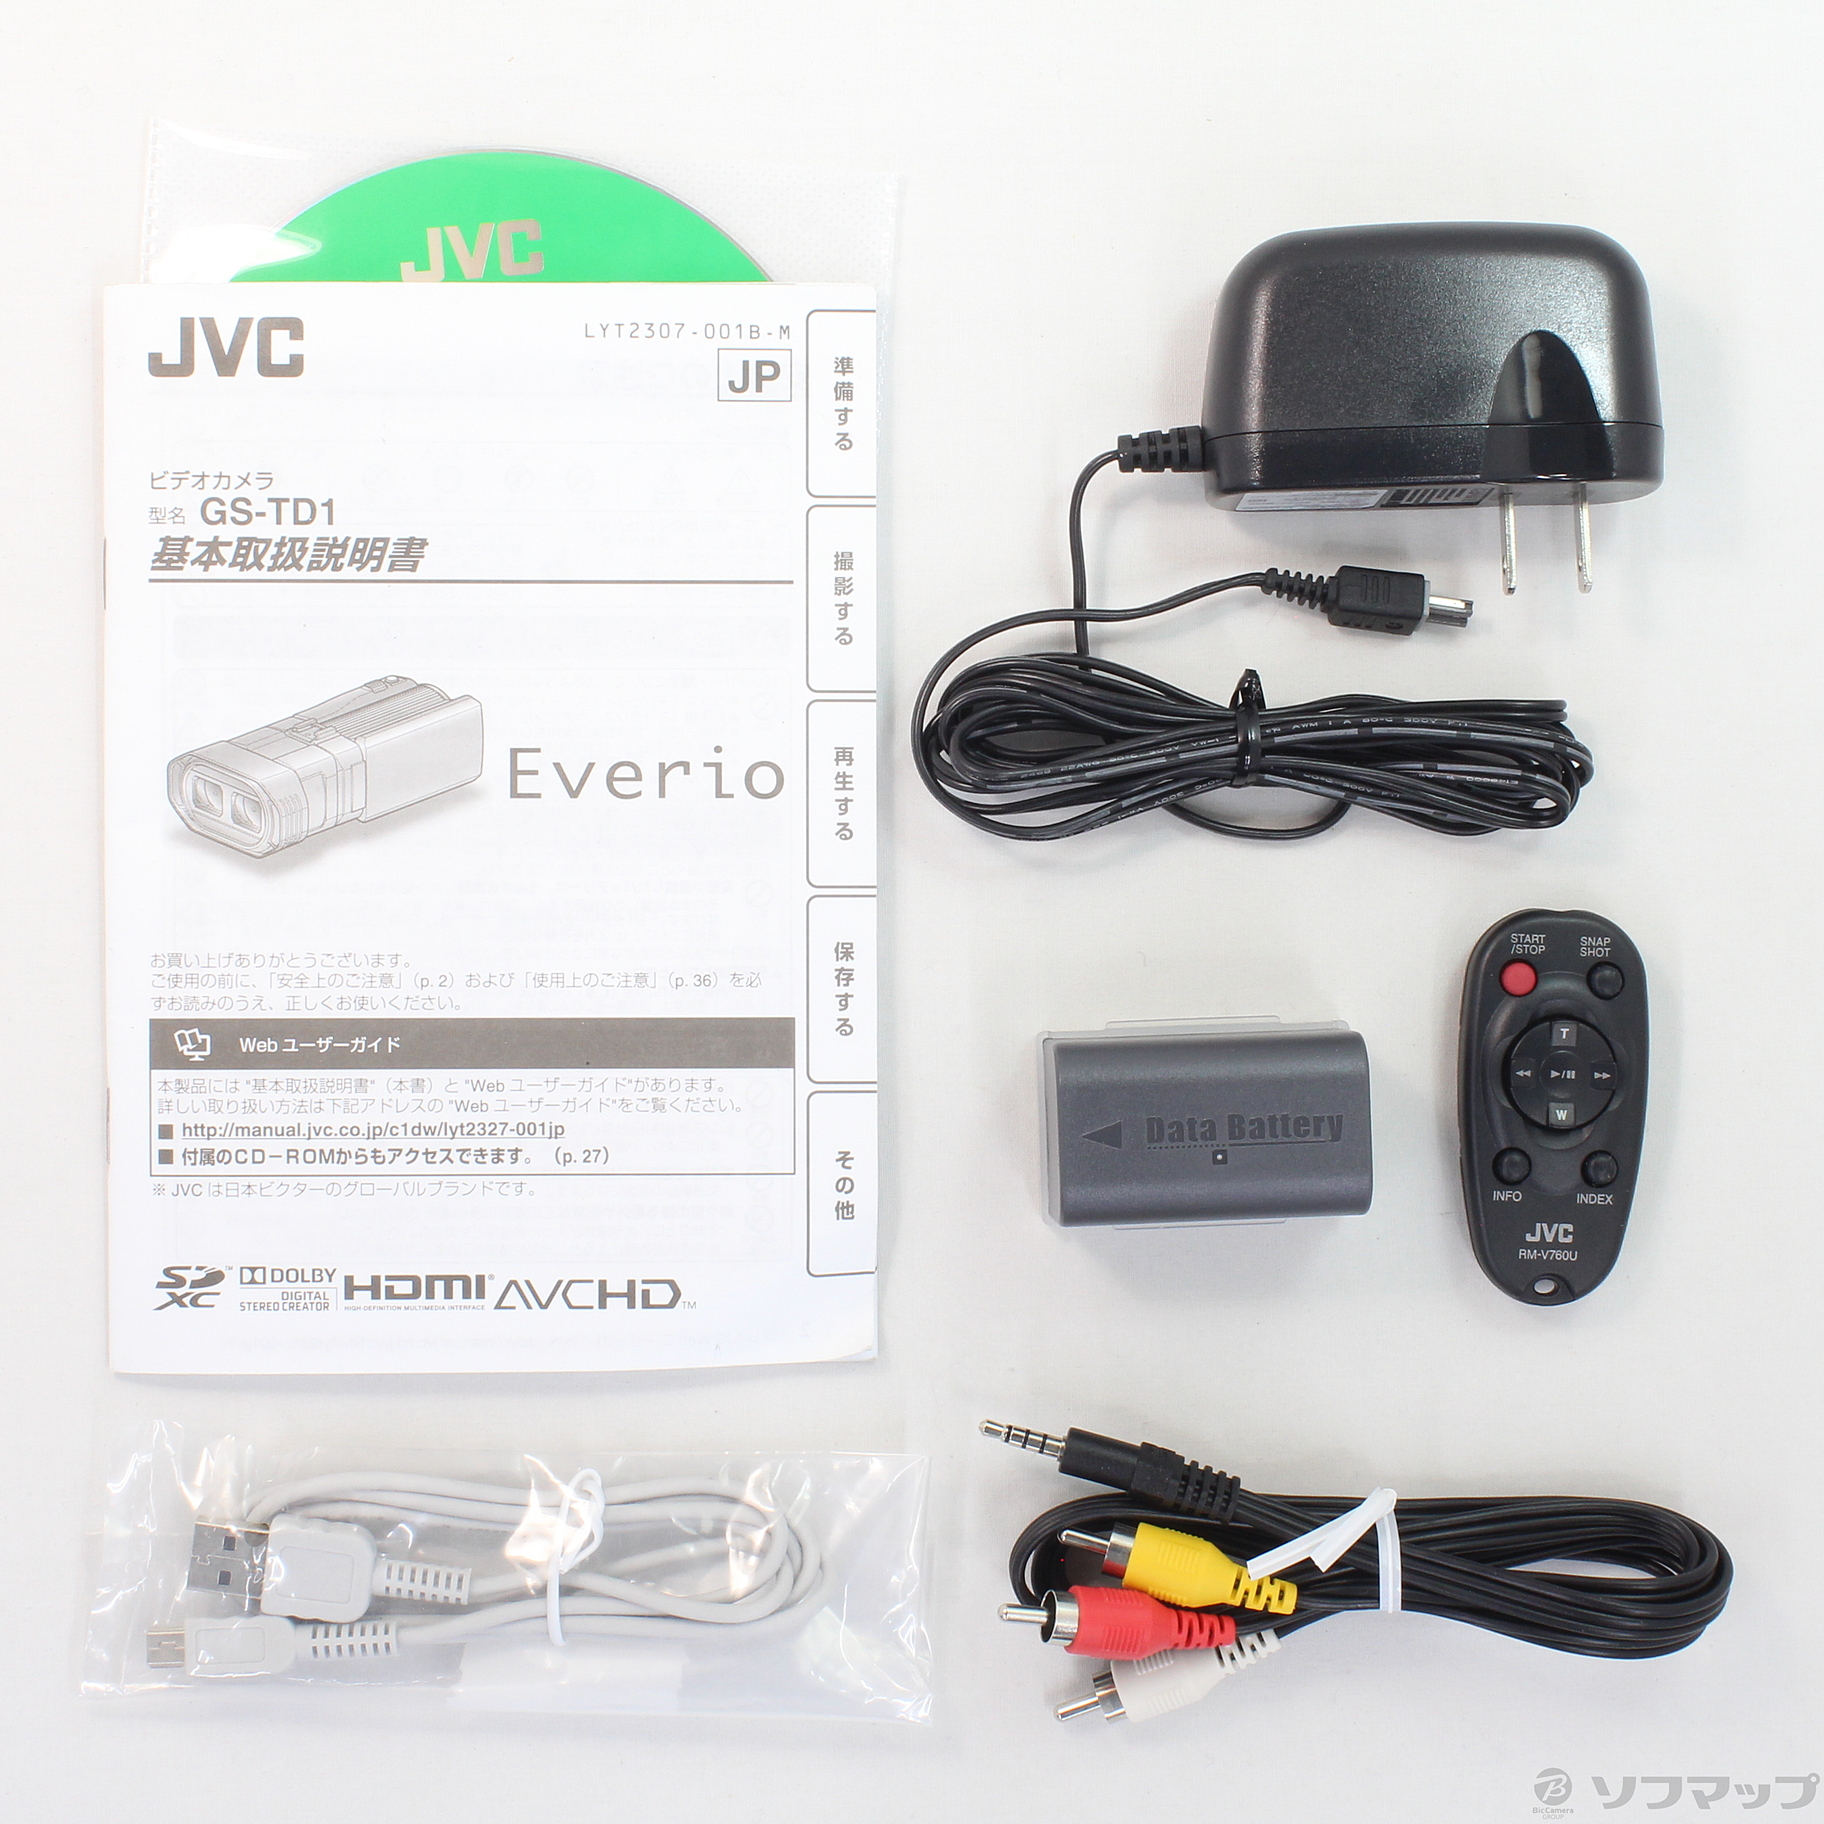 【値下】JVC Everio GS-TD1 3Dビデオカメラ ビデオカメラ